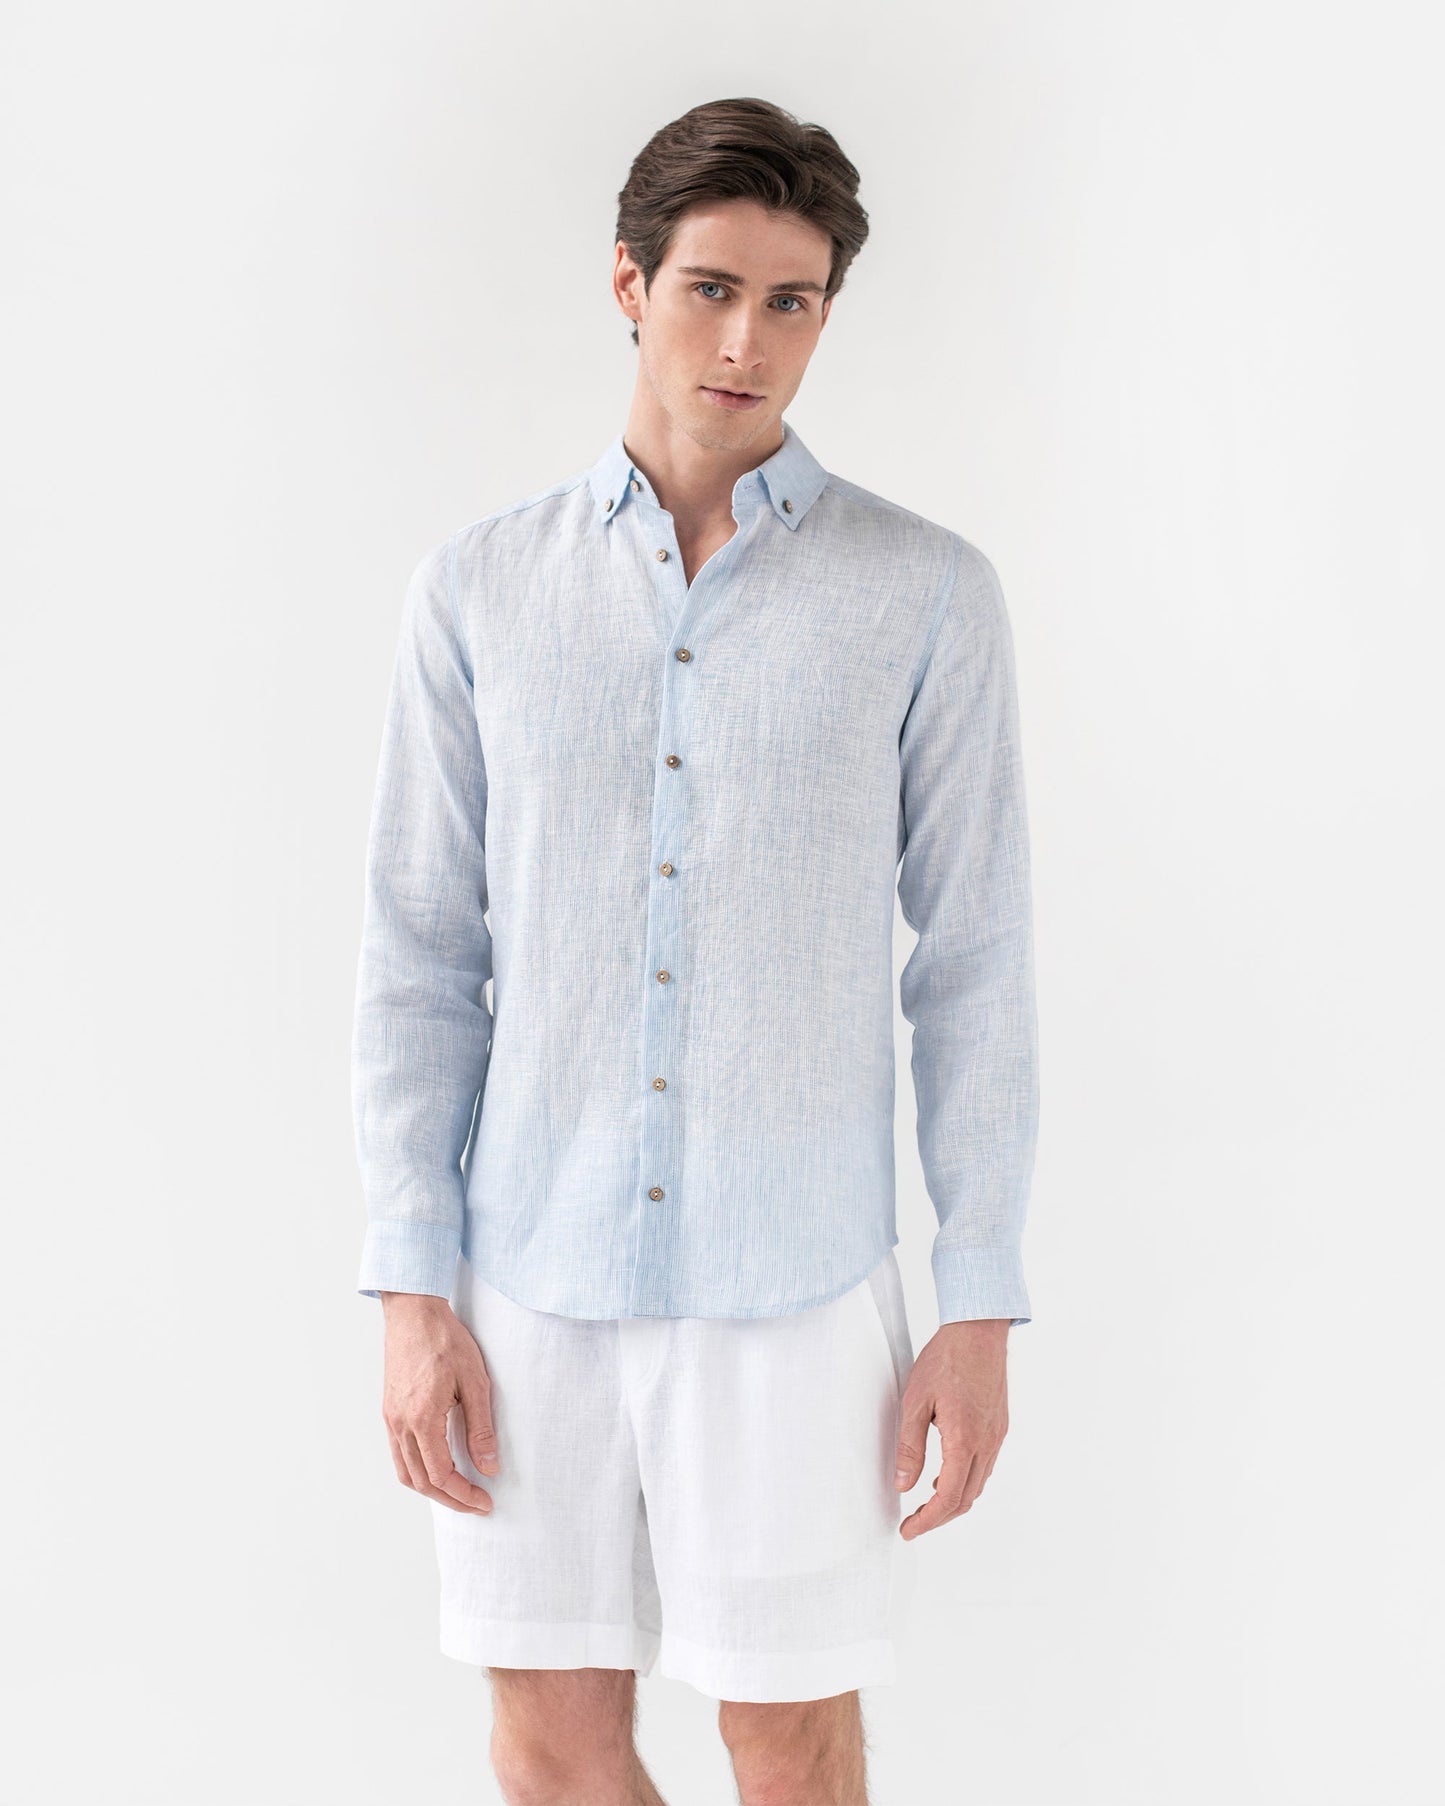 Men's linen shirt NEVADA in pinstripe blue - MagicLinen